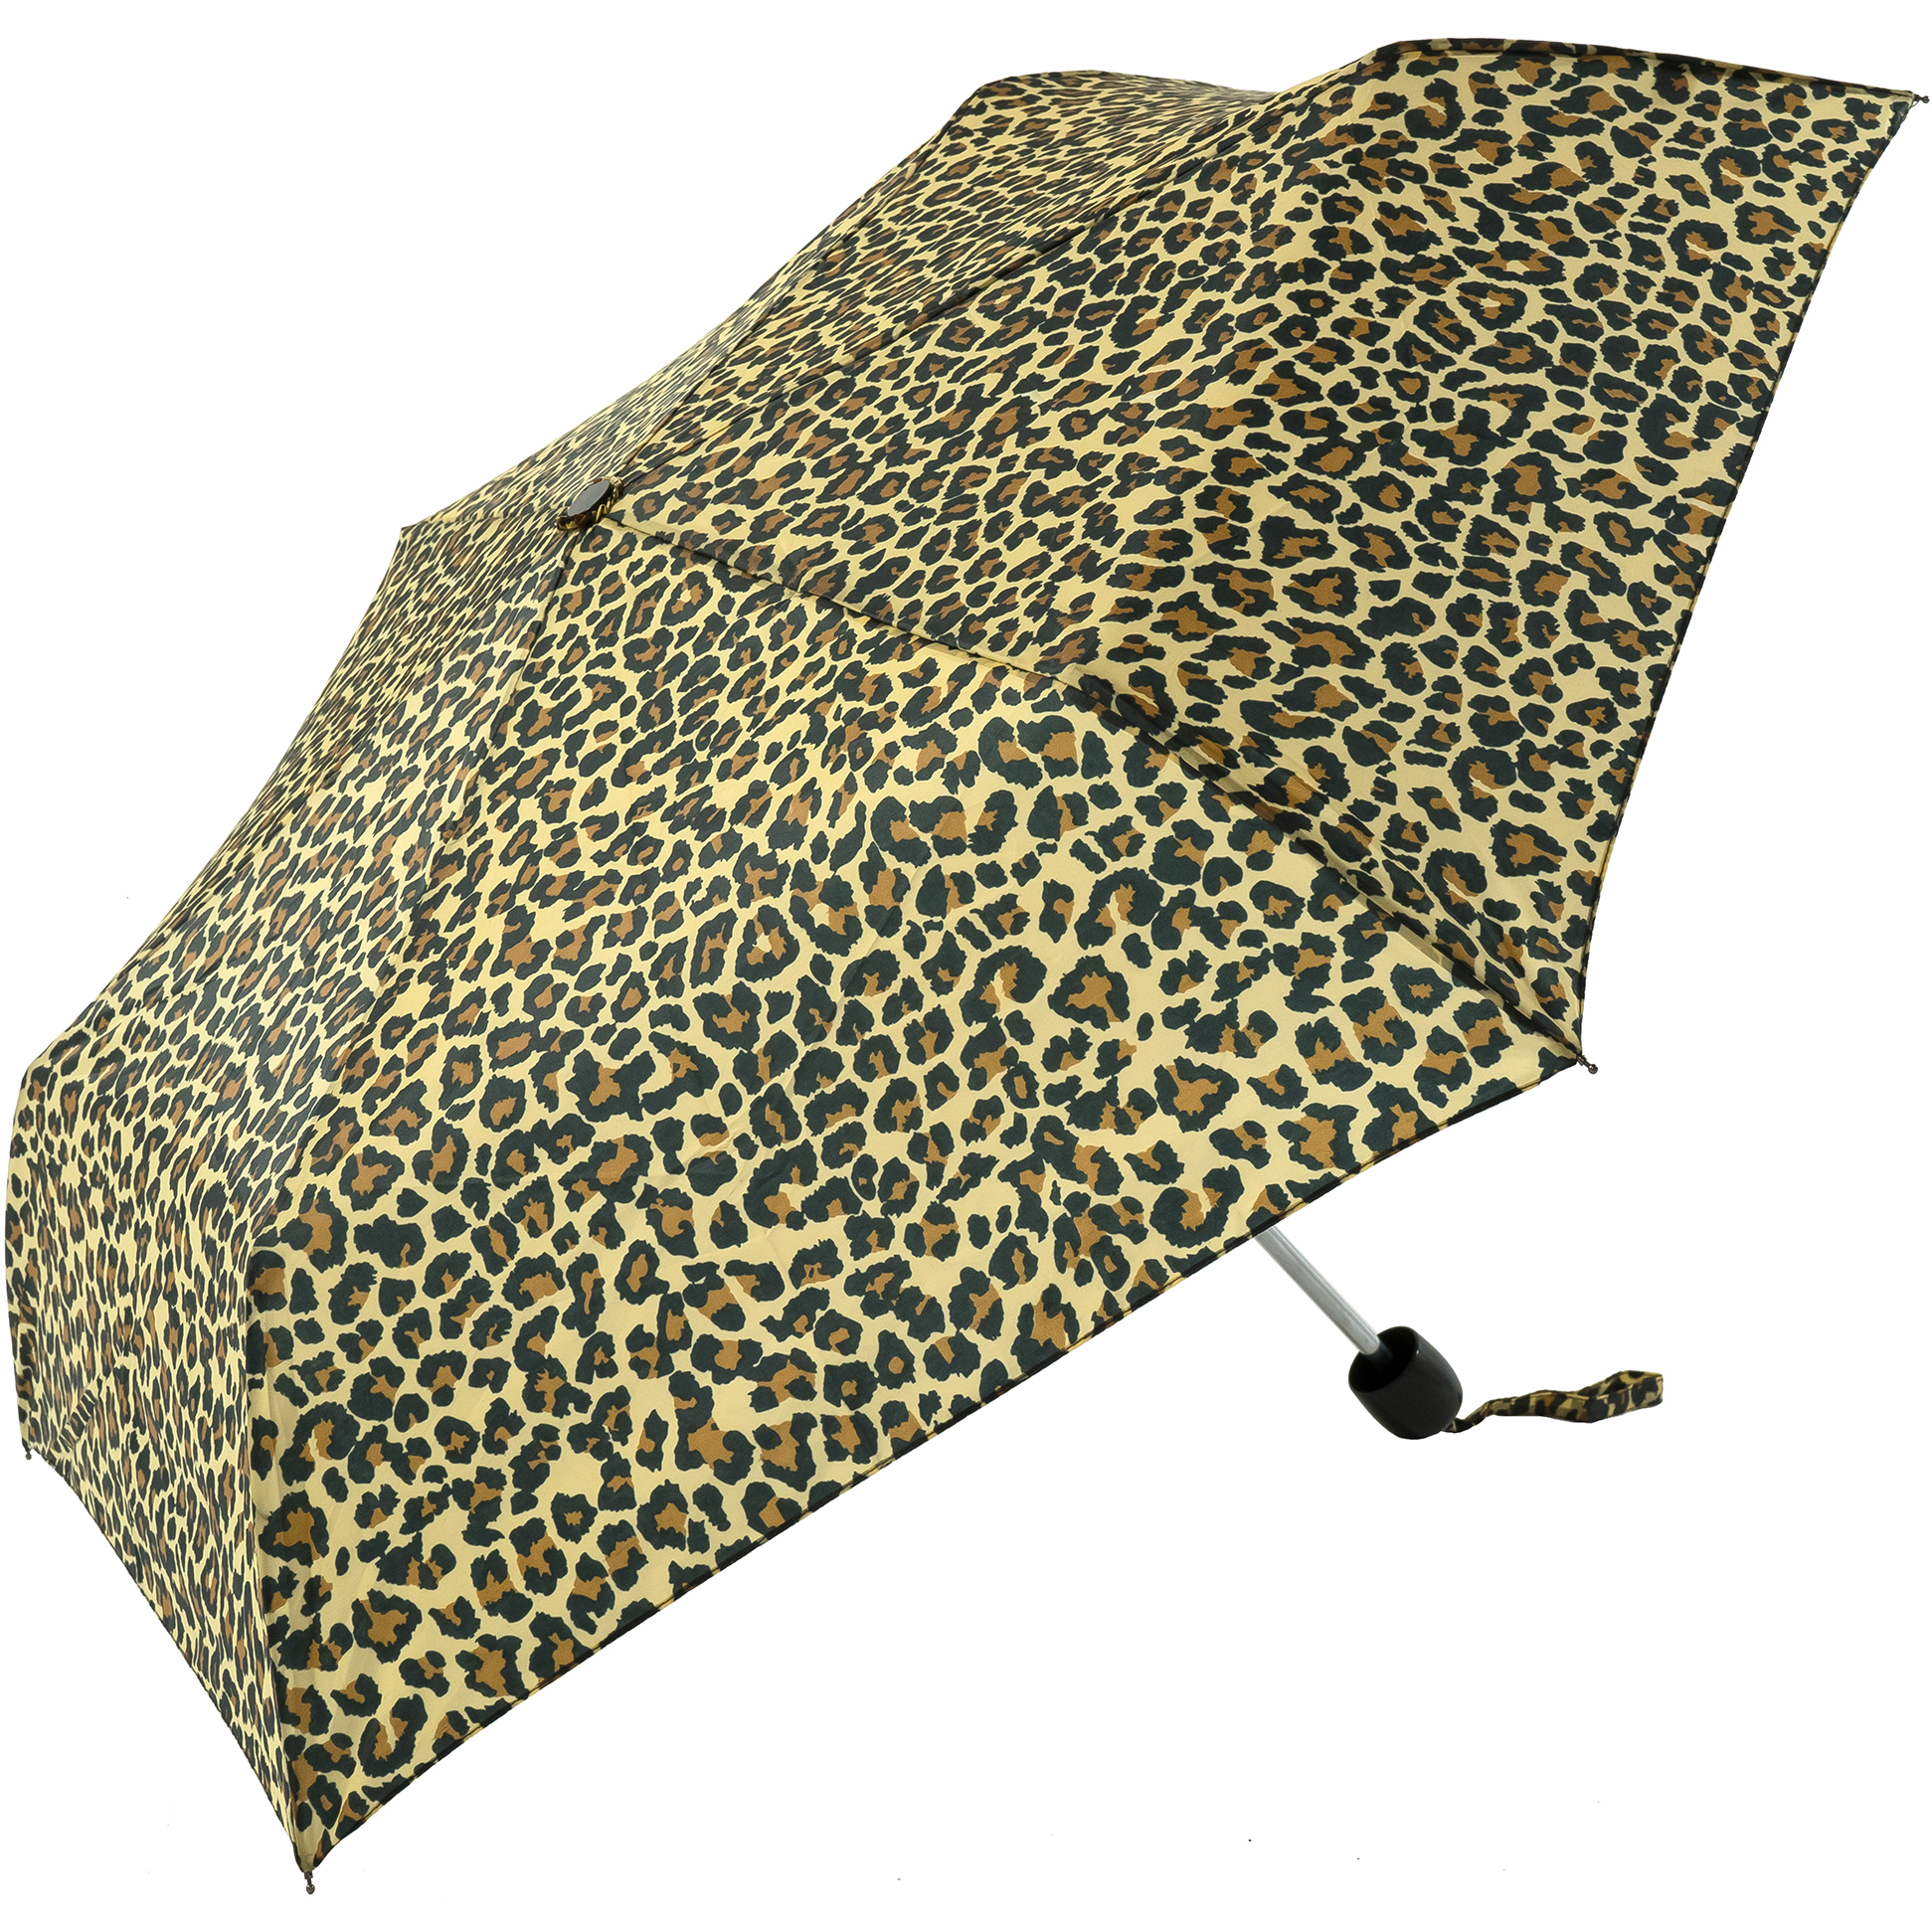 Leopard Print Compact Umbrella (31099)